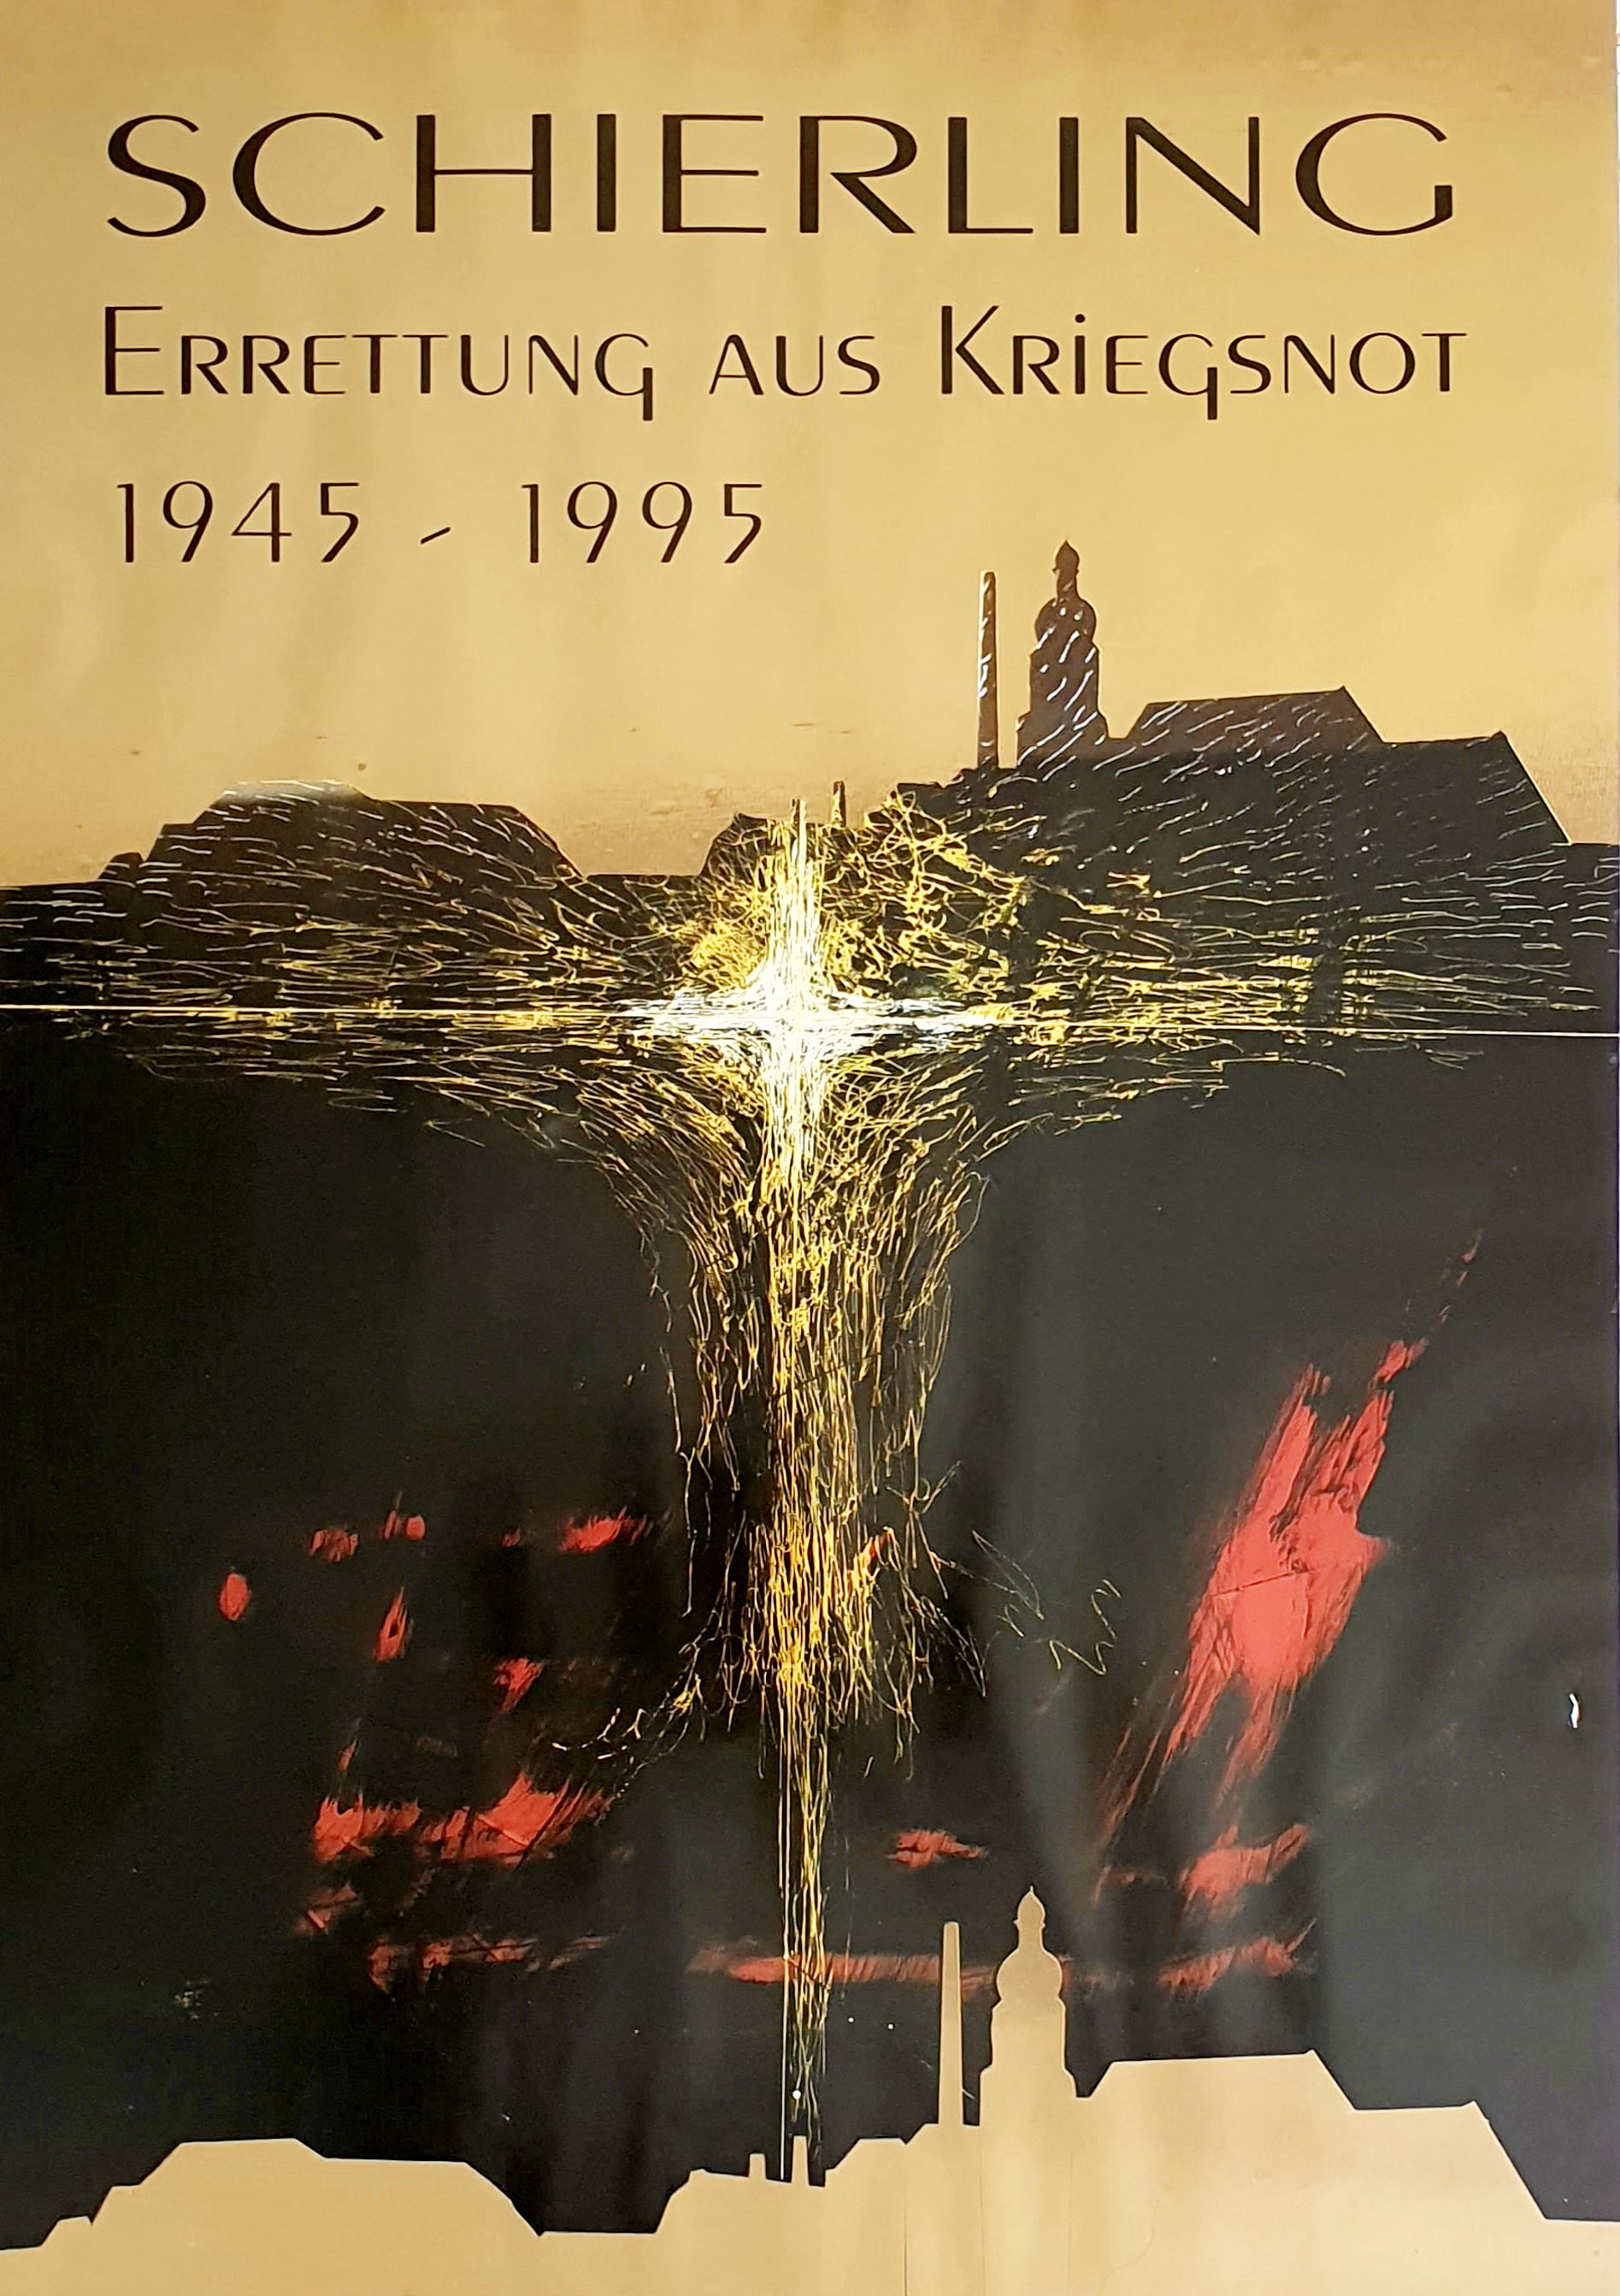 Gelbde Schierling Plakat aus dem Jahre 1995